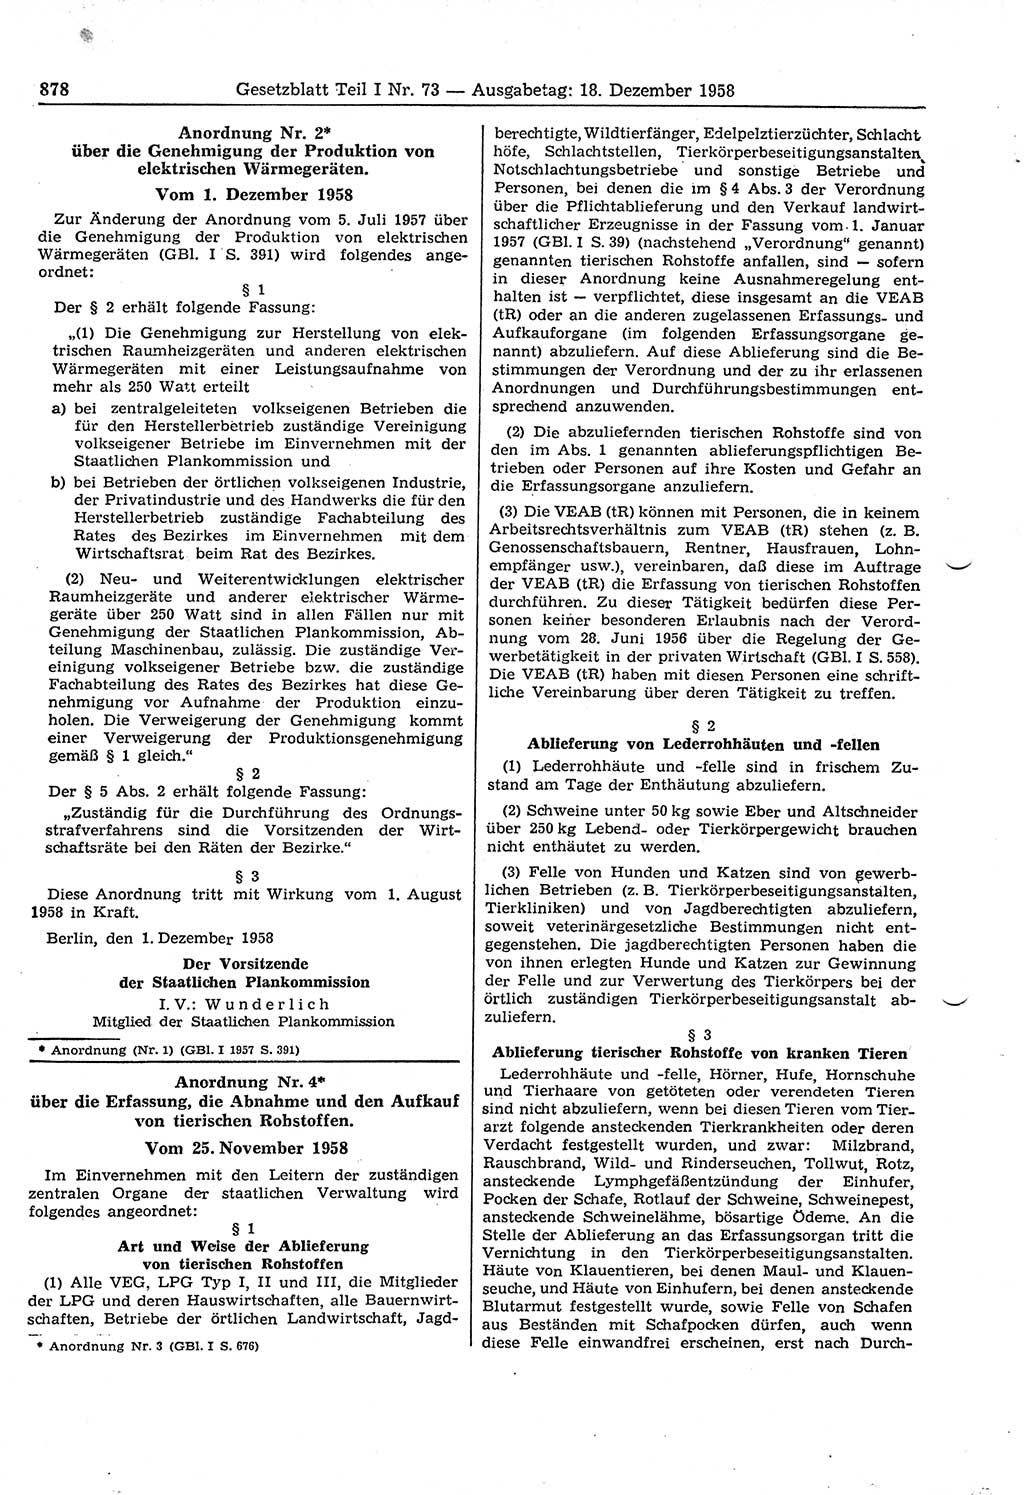 Gesetzblatt (GBl.) der Deutschen Demokratischen Republik (DDR) Teil Ⅰ 1958, Seite 878 (GBl. DDR Ⅰ 1958, S. 878)